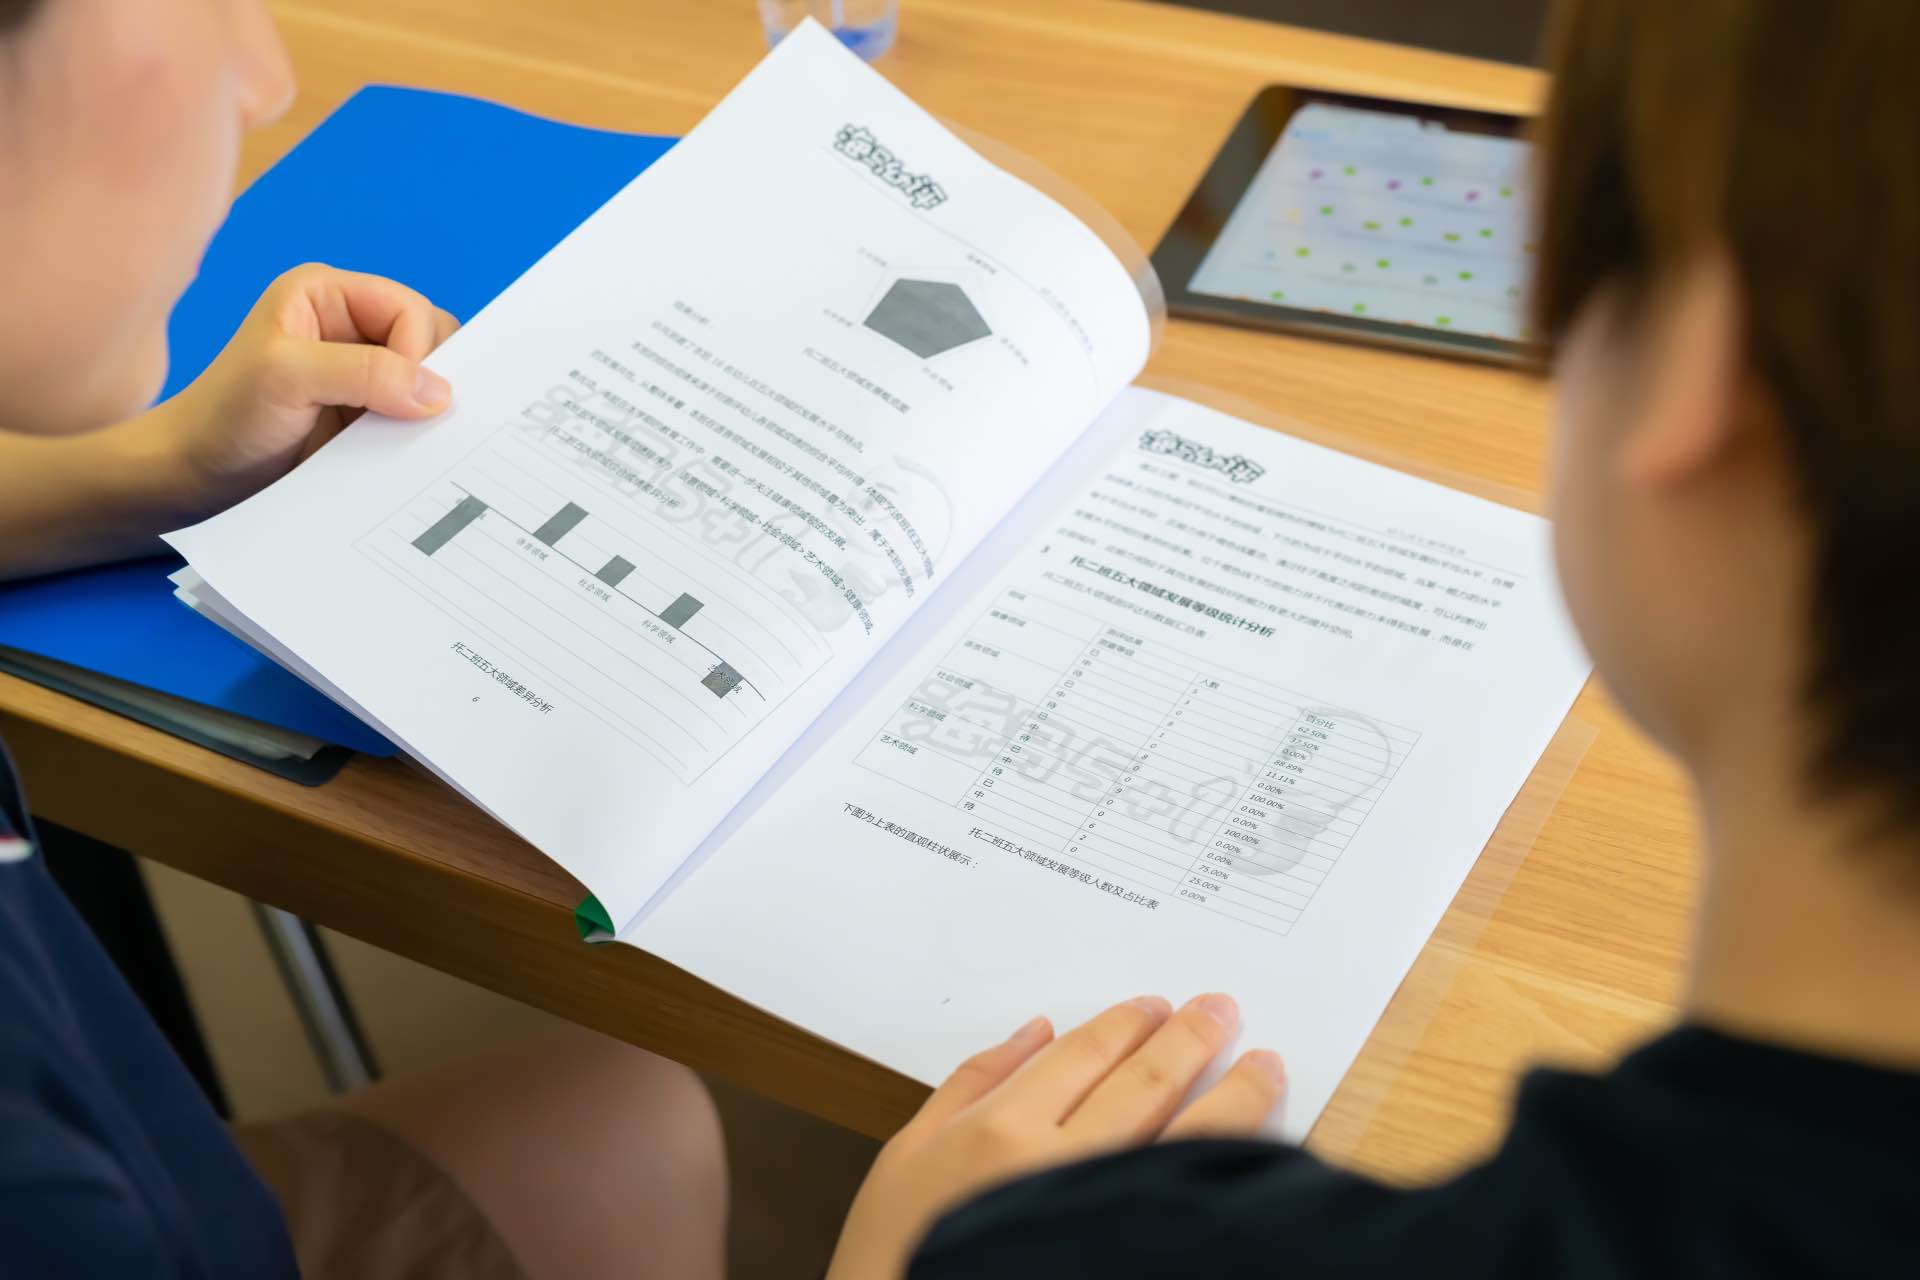 海马幼评的测评报告能够帮助老师和家长更加了解儿童个体的发展情况